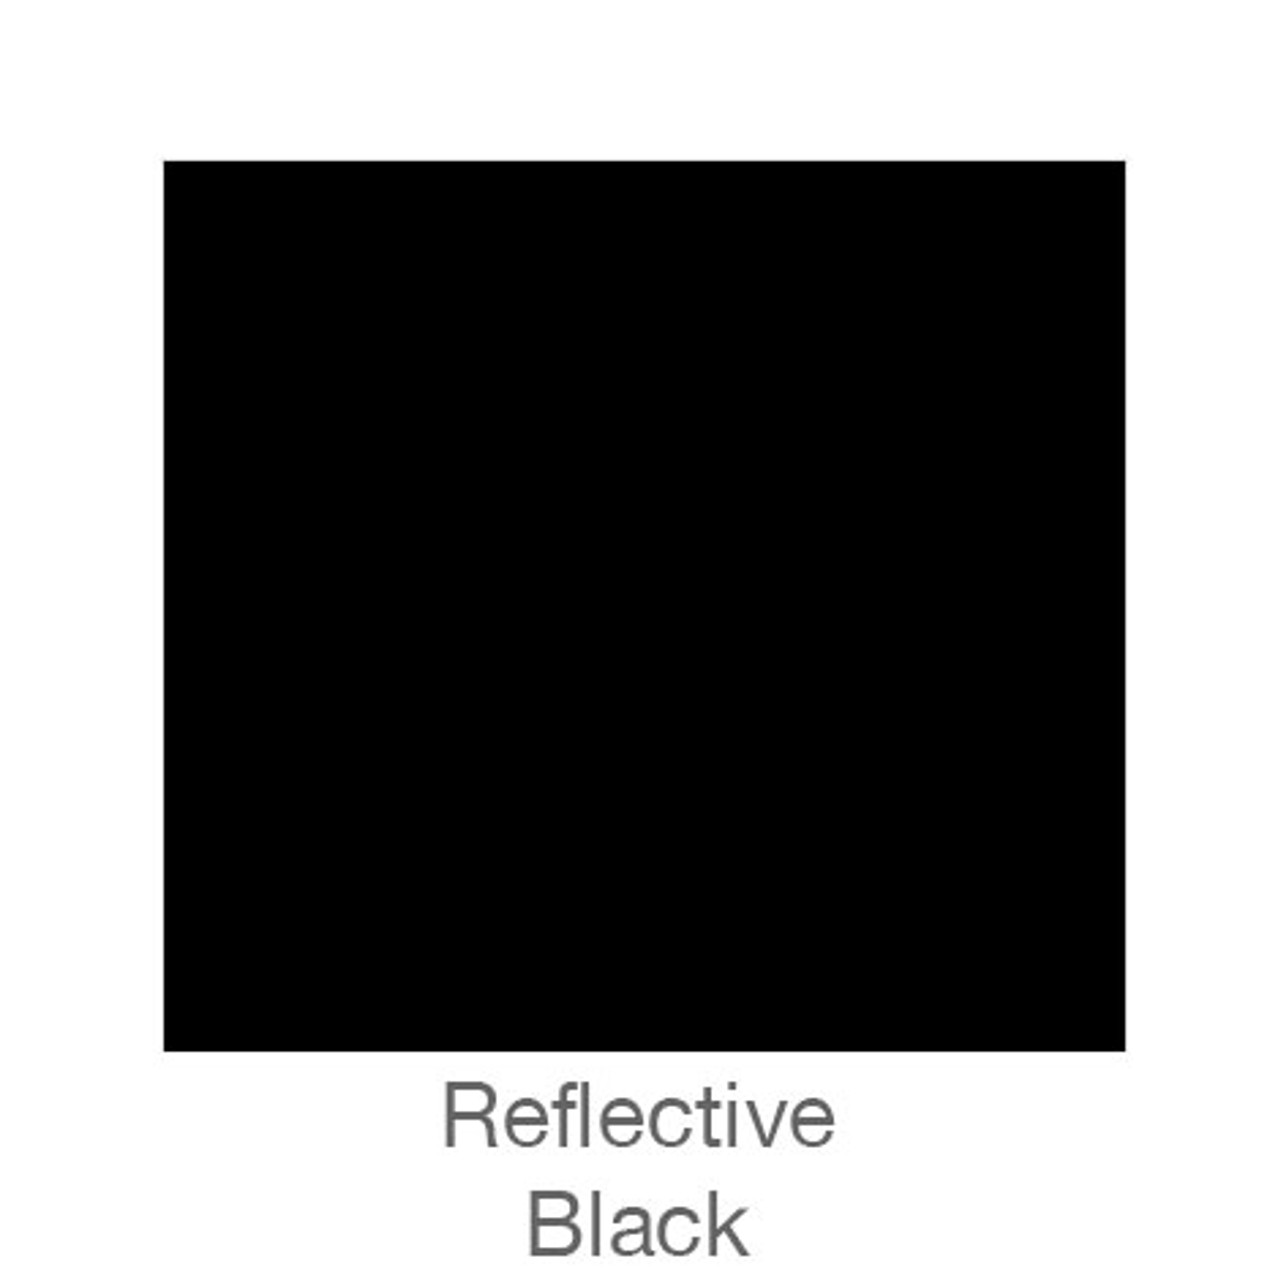 Black - Reflective Vinyl - 12 x 12 